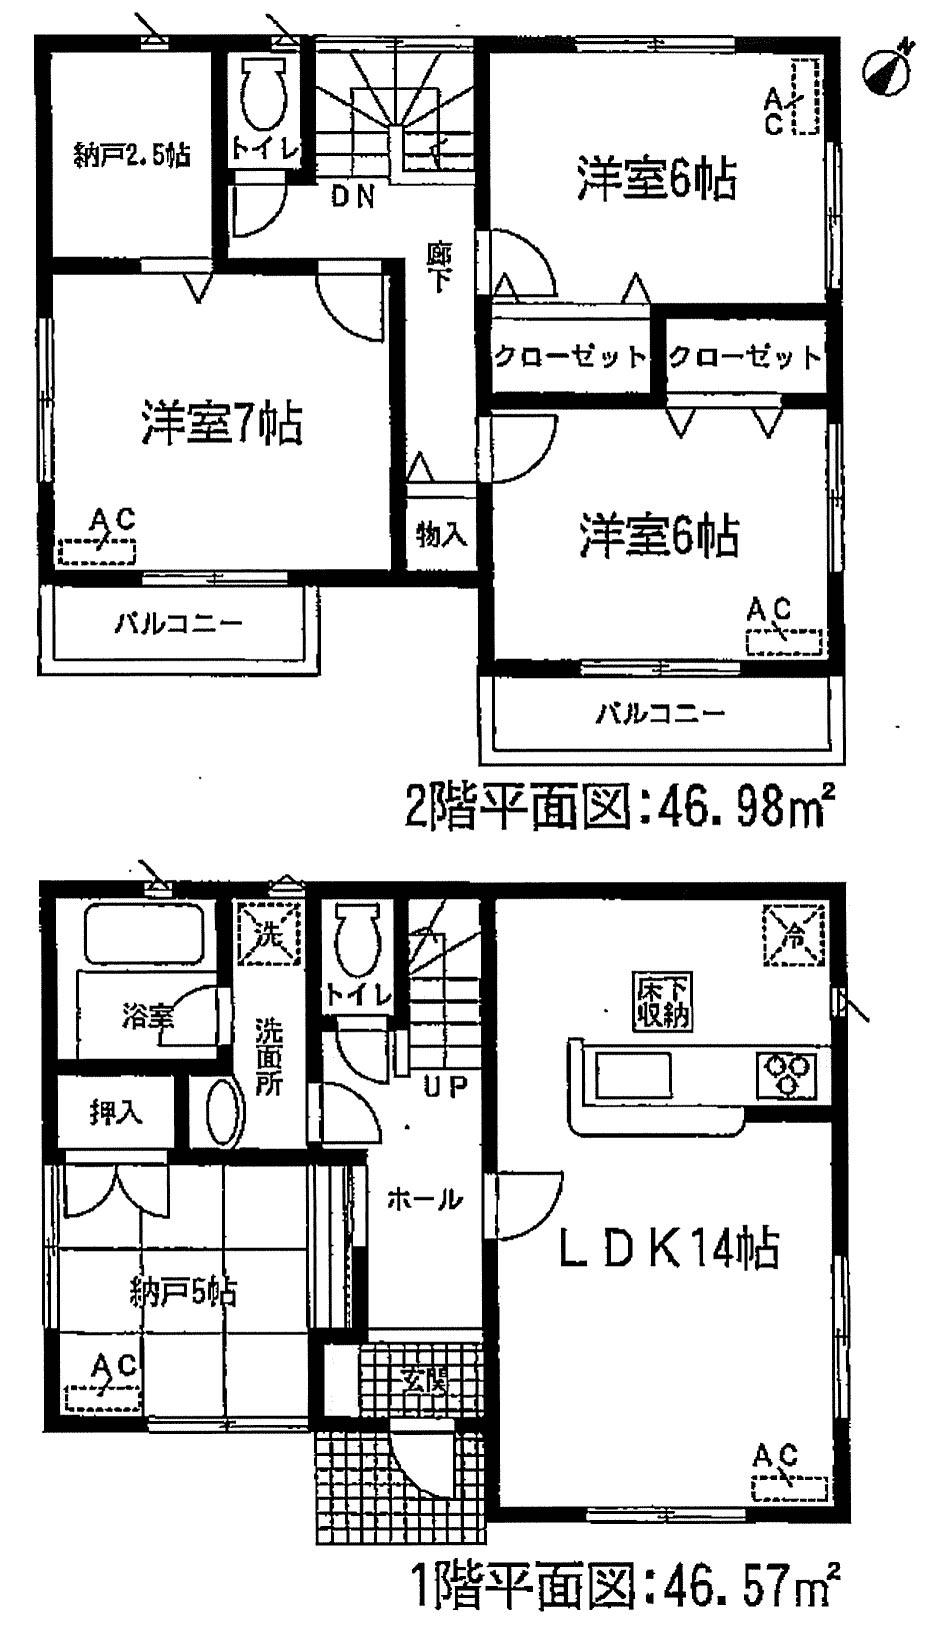 Floor plan. 22,900,000 yen, 3LDK + S (storeroom), Land area 113.53 sq m , Building area 93.55 sq m   [3SLDK taken between 4 Building] 